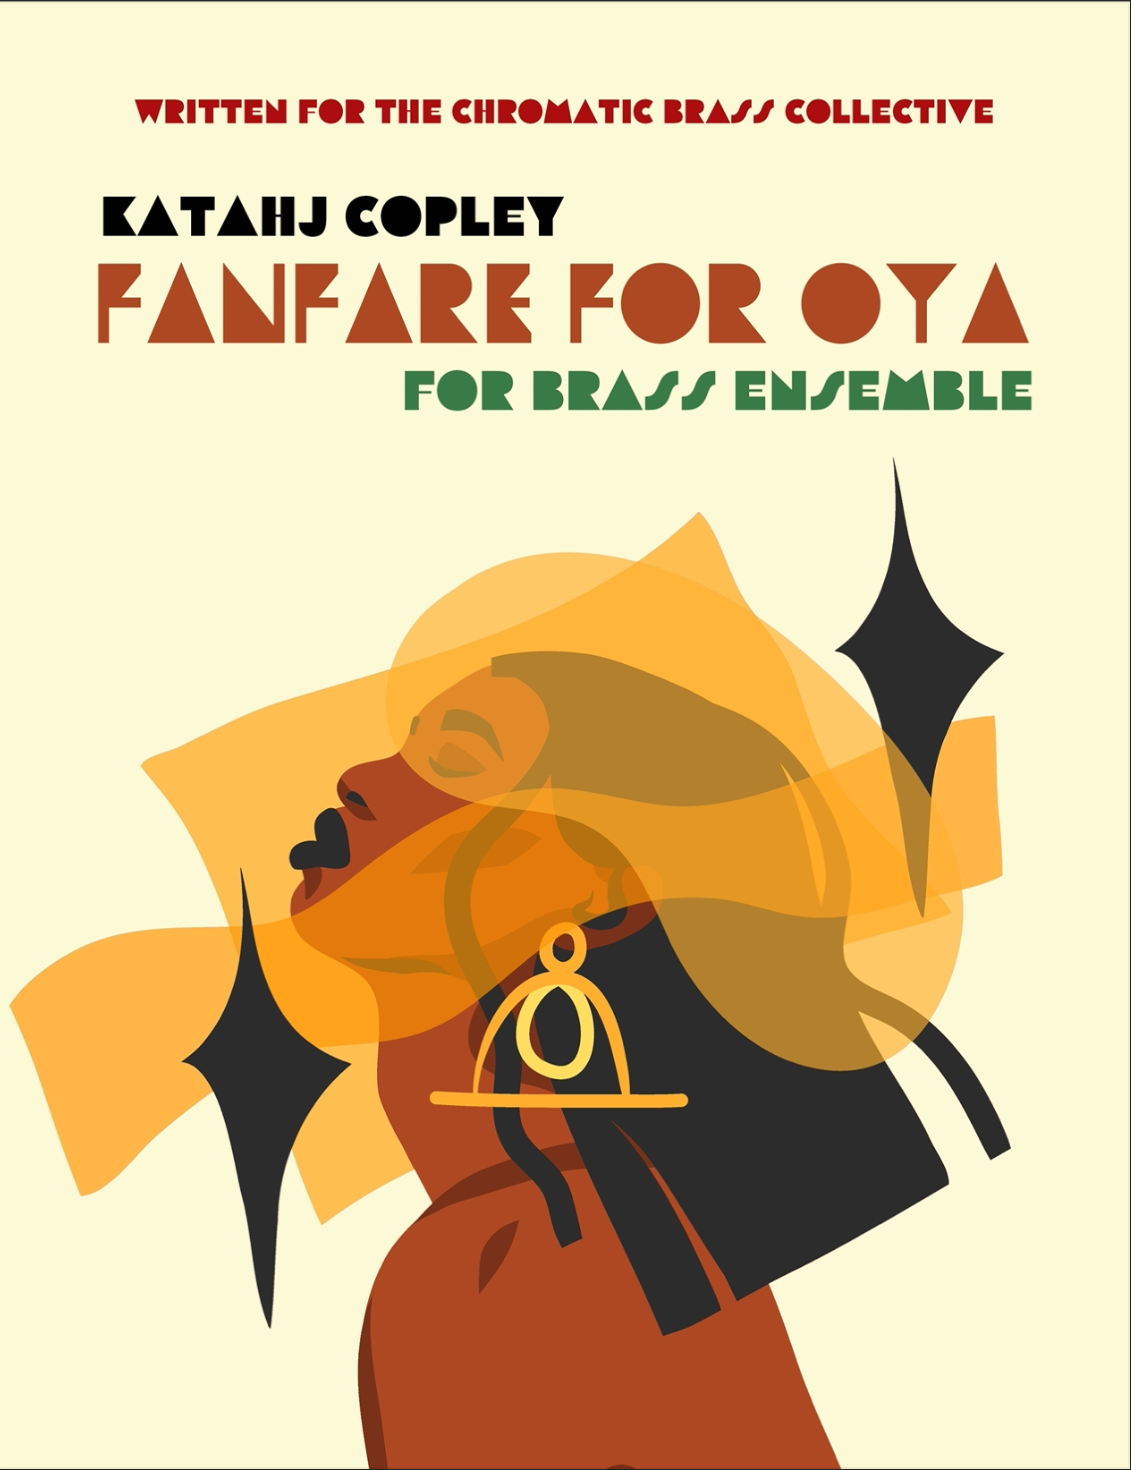 Fanfare For Oya by Katahj Copley